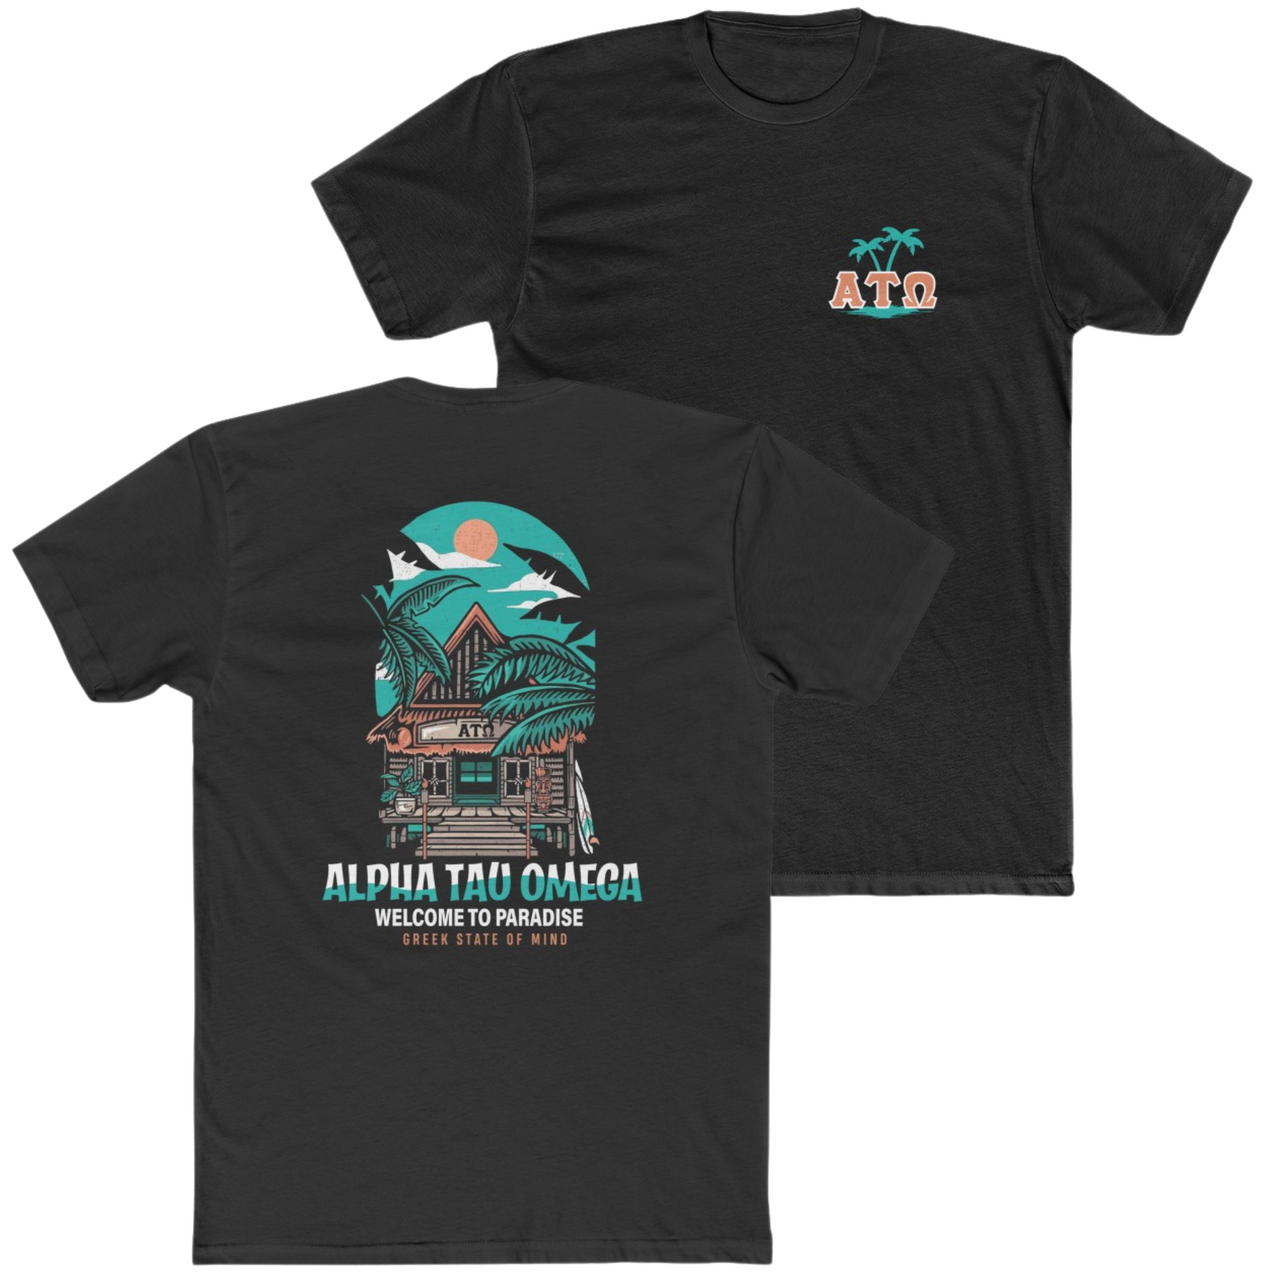 Black Alpha Tau Omega Graphic T-Shirt | Welcome to Paradise | Alpha Tau Omega Apparel 